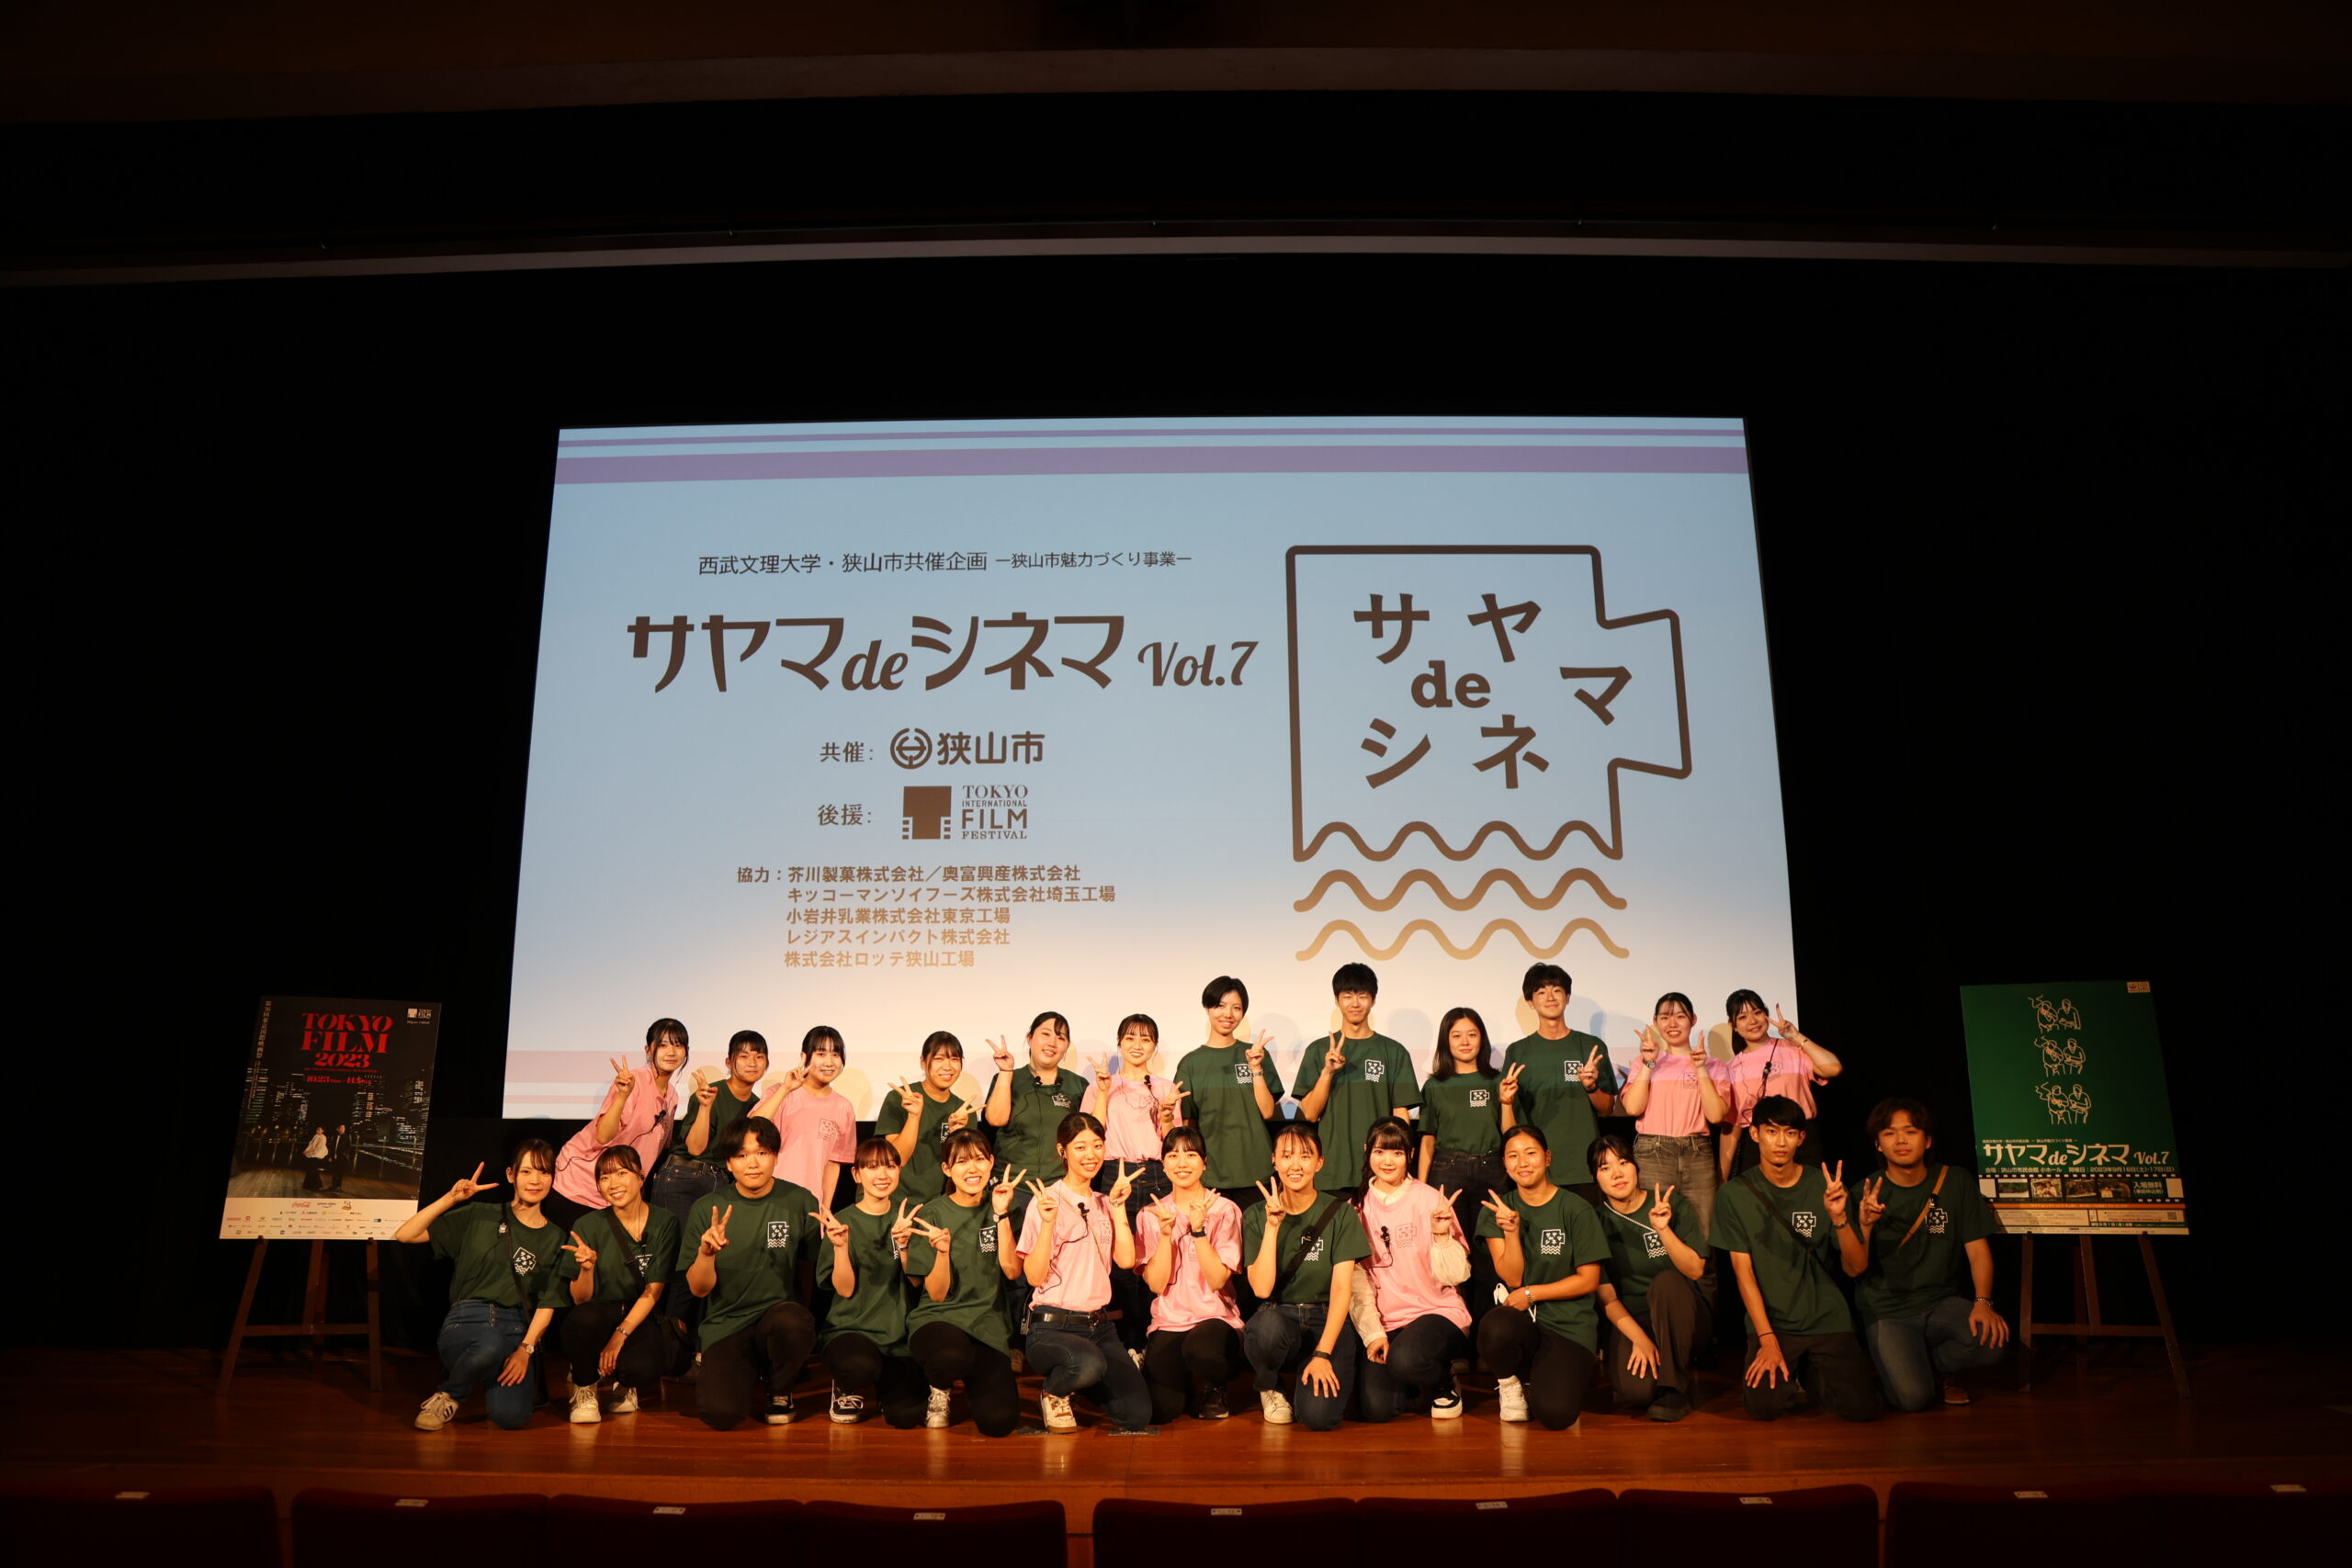 【入試広報課Report】「サヤマdeシネマVol.7」閉幕、そして東京国際映画祭へ向けて始動！～サービス経営学部　メディアイベントの学び～